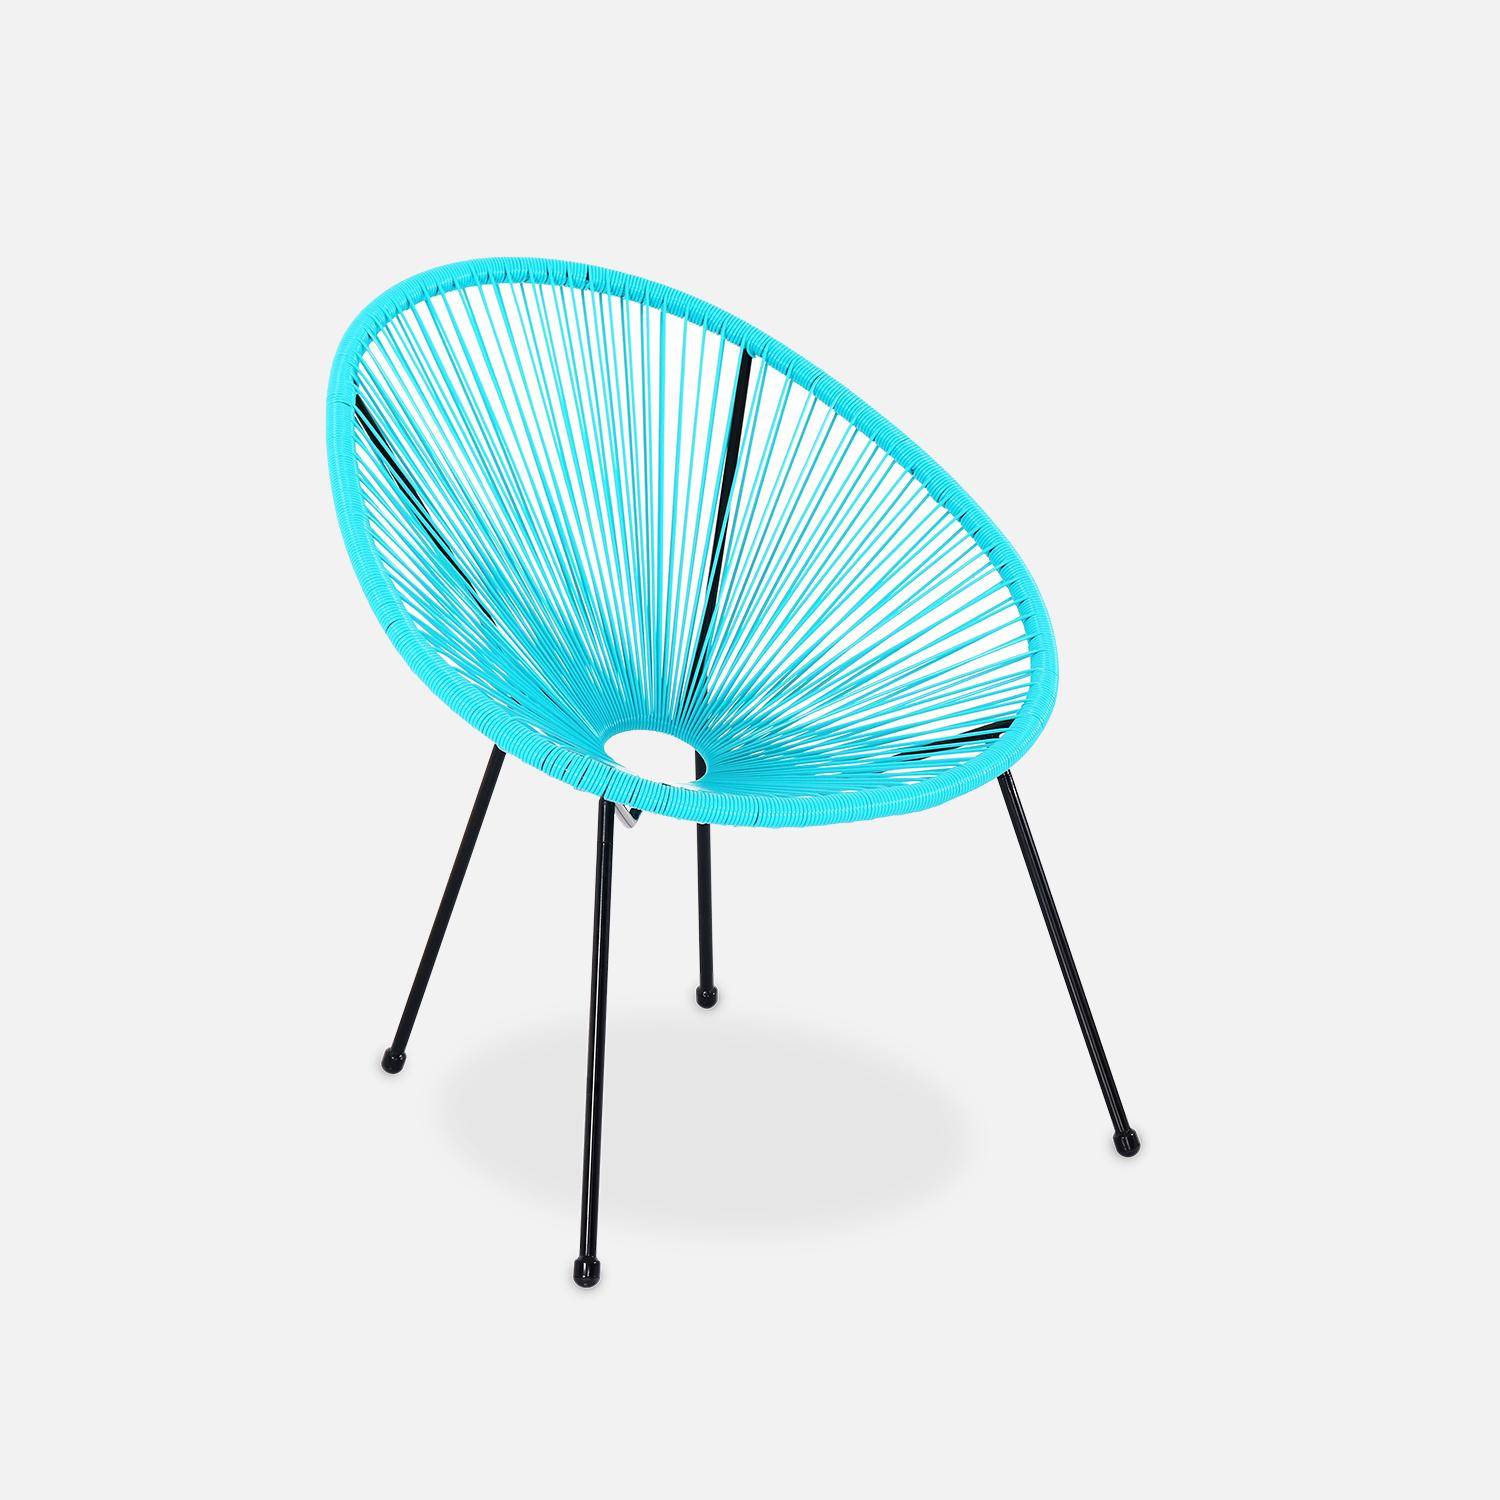 Lot de 2 fauteuils design Oeuf - Acapulco Turquoise- Fauteuils 4 pieds design rétro, cordage plastique, intérieur / extérieur Photo3